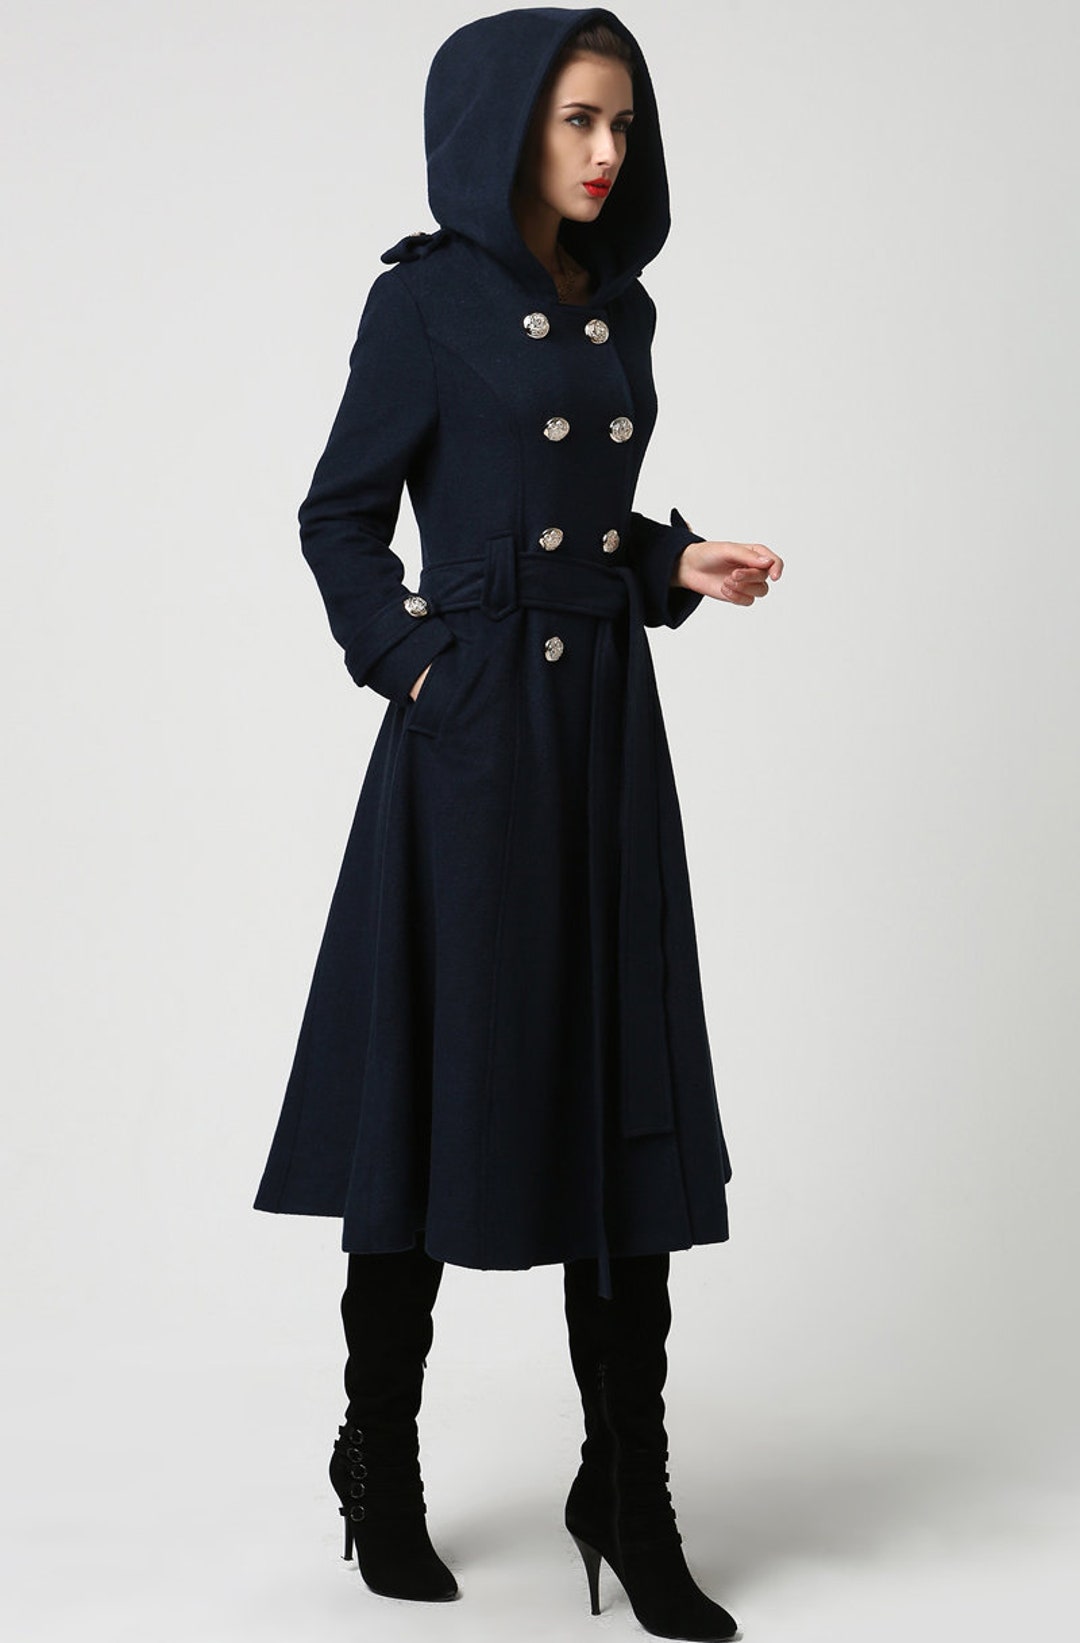 Wool Coat Women Long Wool Coat Winter Coat Overcoat Blue - Etsy